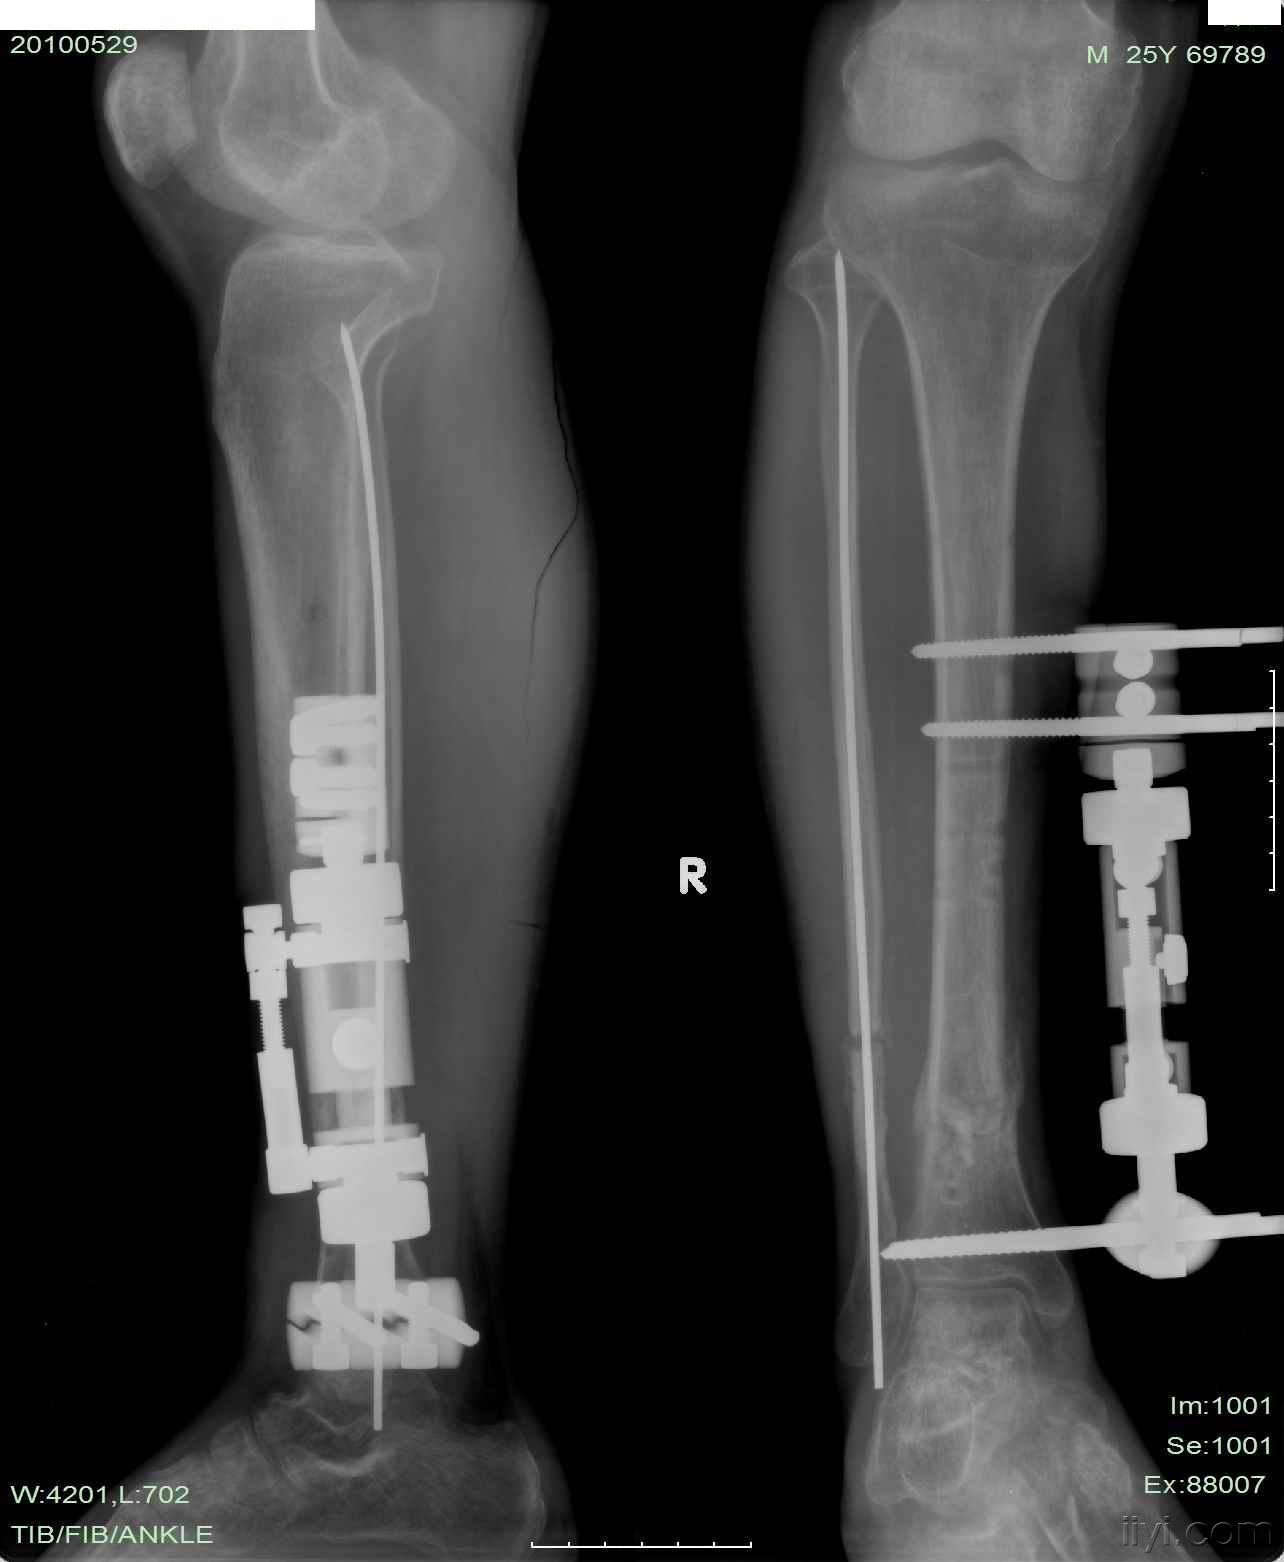 三例胫腓骨骨折并发症的处理 骨科与显微外科专业讨论版 爱爱医医学论坛